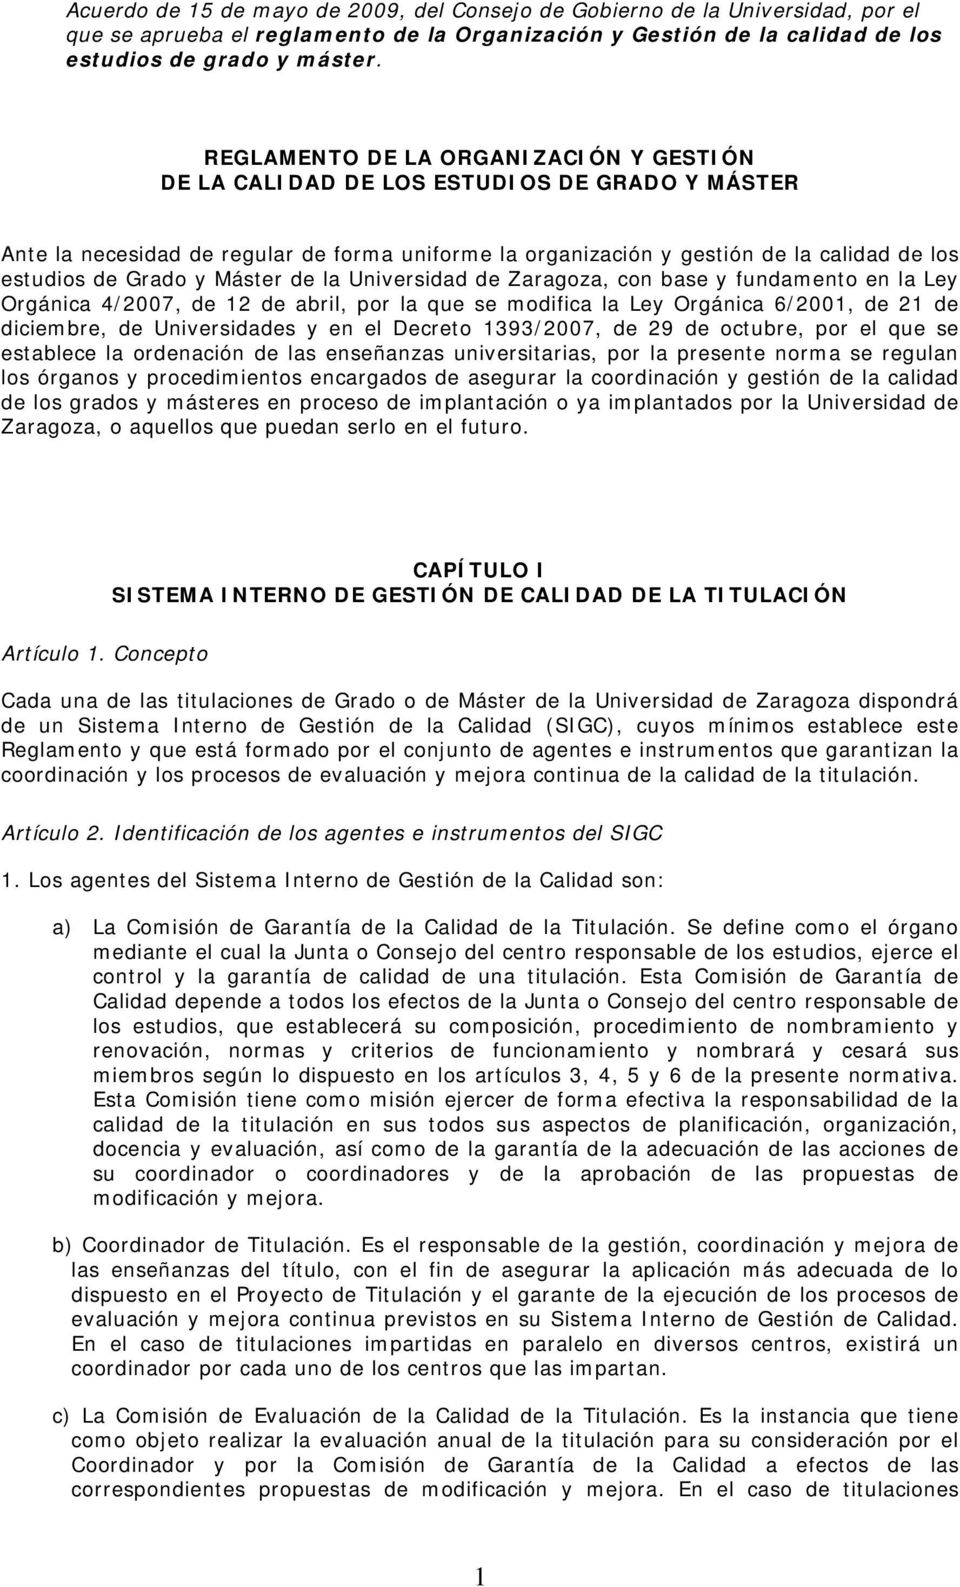 y Máster de la Universidad de Zaragoza, con base y fundamento en la Ley Orgánica 4/2007, de 12 de abril, por la que se modifica la Ley Orgánica 6/2001, de 21 de diciembre, de Universidades y en el